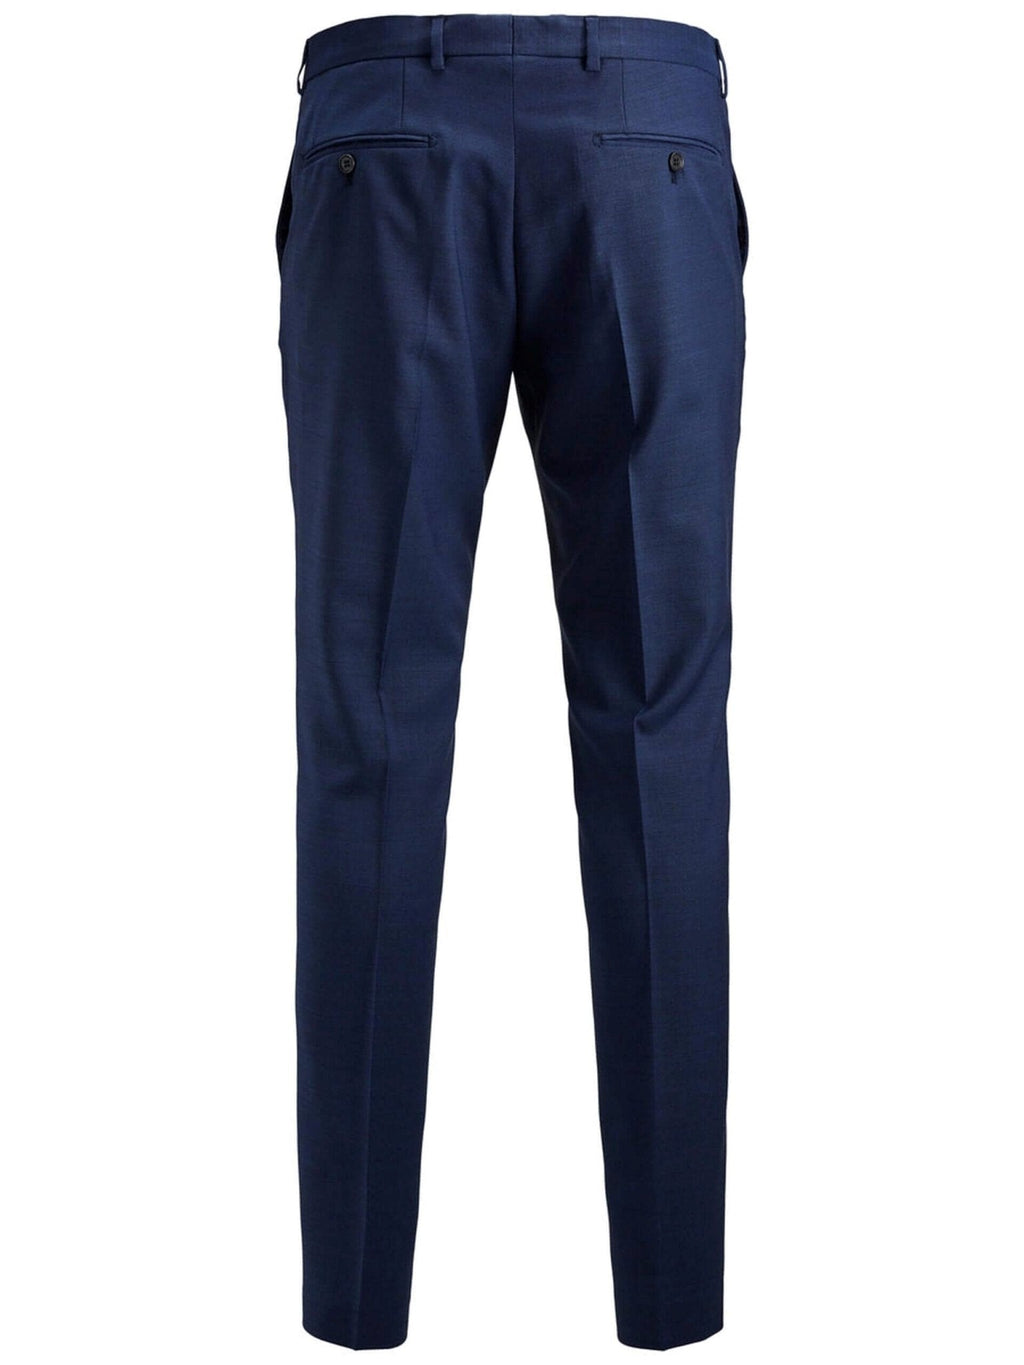 Pantaloni classici slimfit - blu medievale